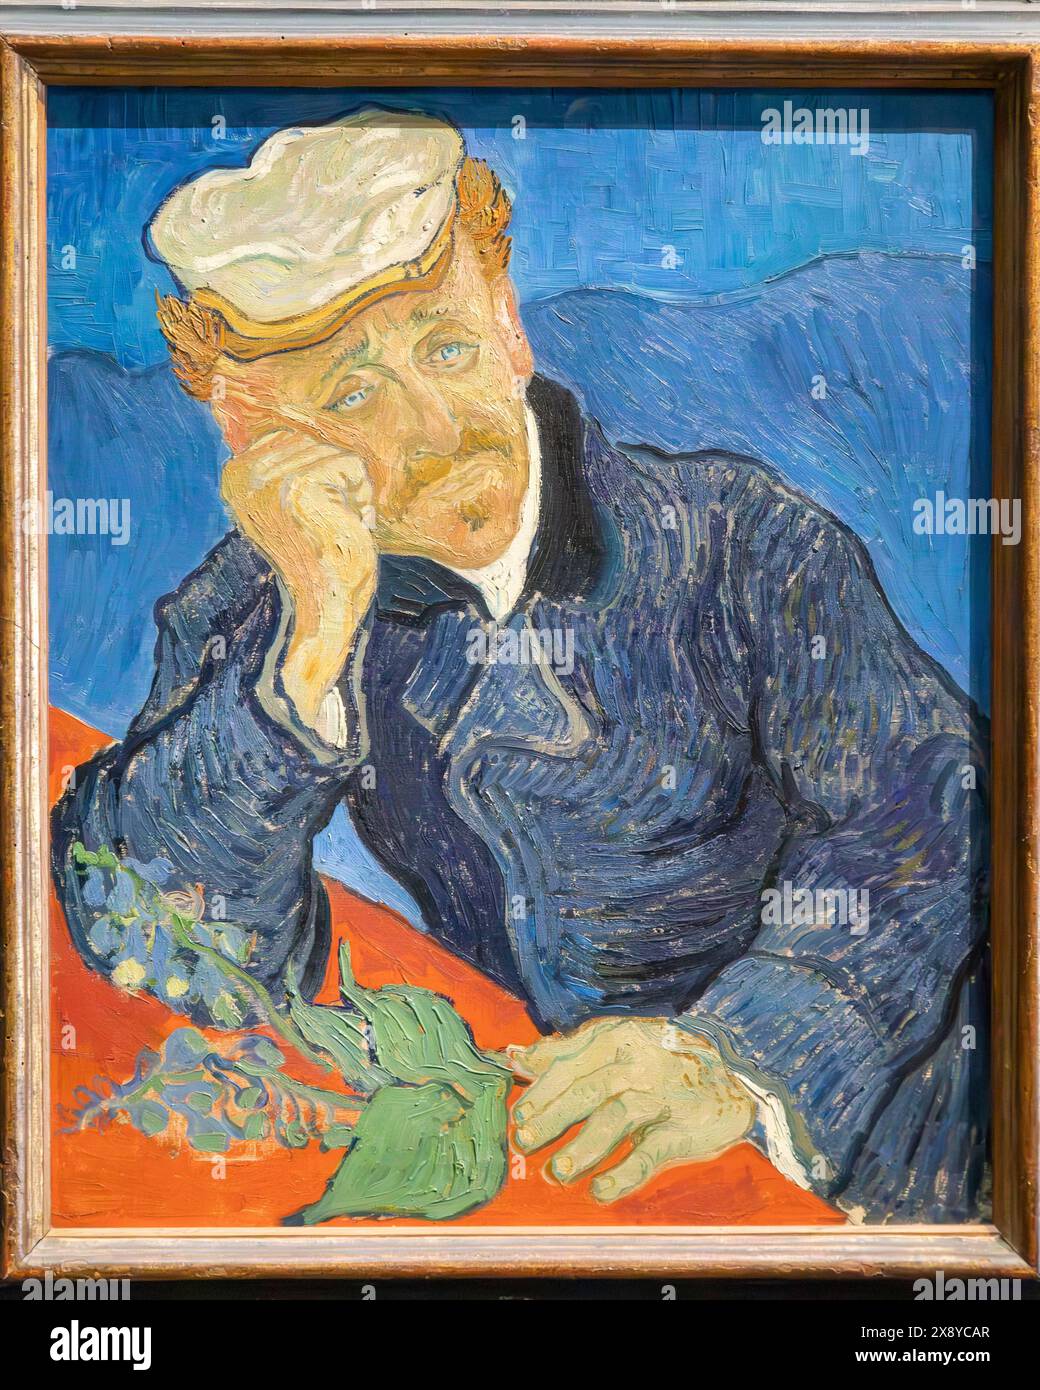 France, Paris, zone classée au Patrimoine mondial de l'UNESCO, Musée d'Orsay, portrait du Dr Paul Gachet par Van Gogh Banque D'Images